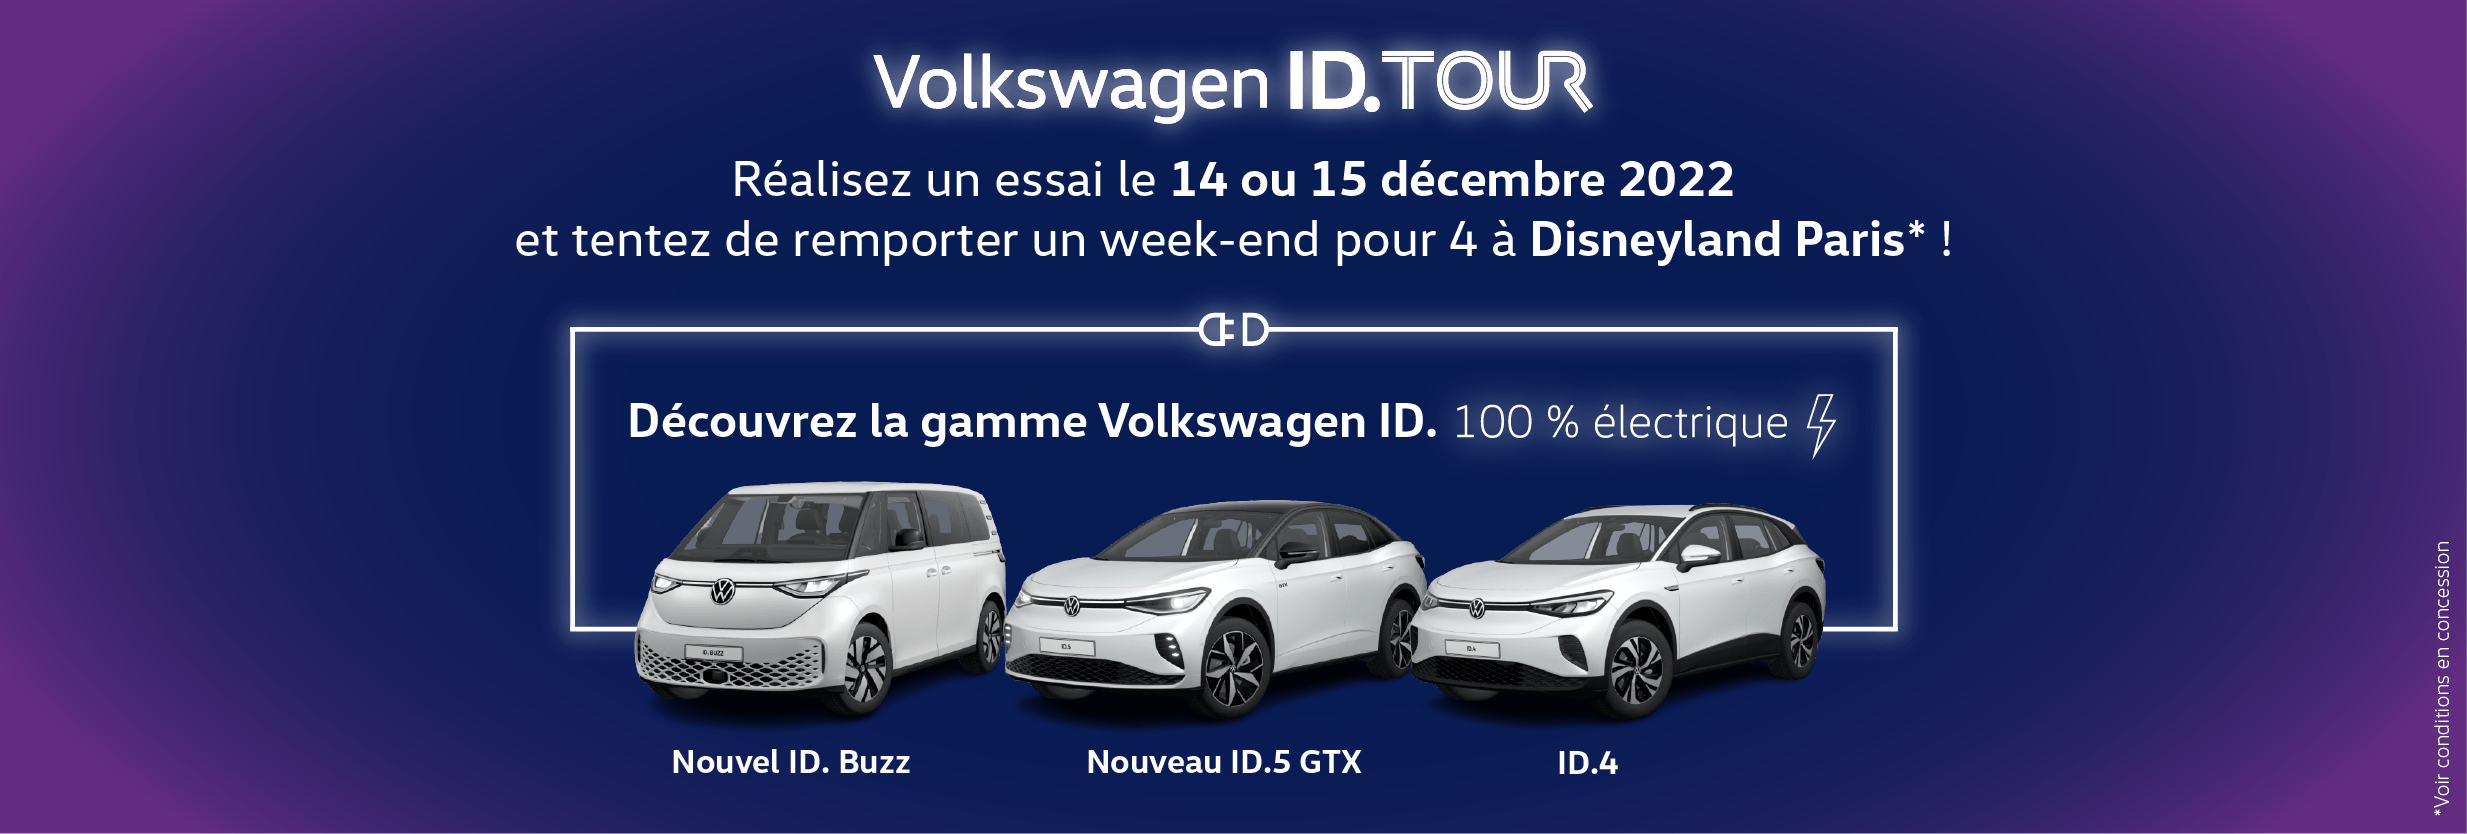 Volkswagen Lens AUTO-EXPO - Tentez de gagner un séjour à Disneyland pour 4 personnes avec l'ID Tour !